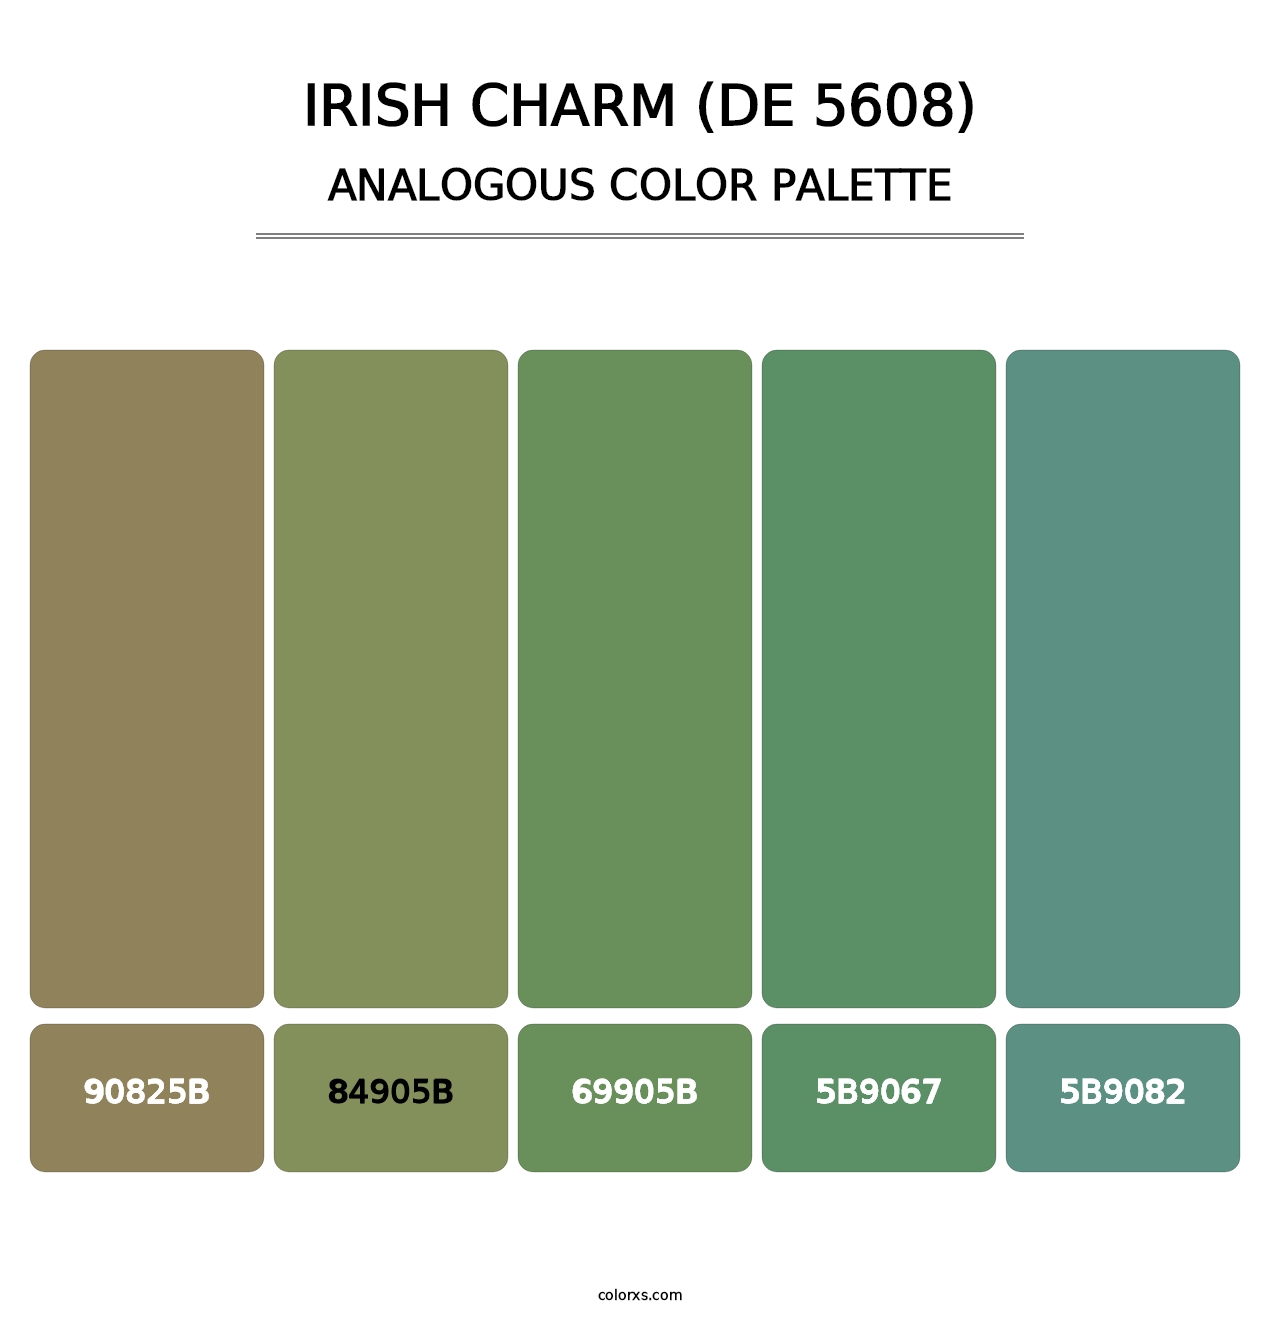 Irish Charm (DE 5608) - Analogous Color Palette